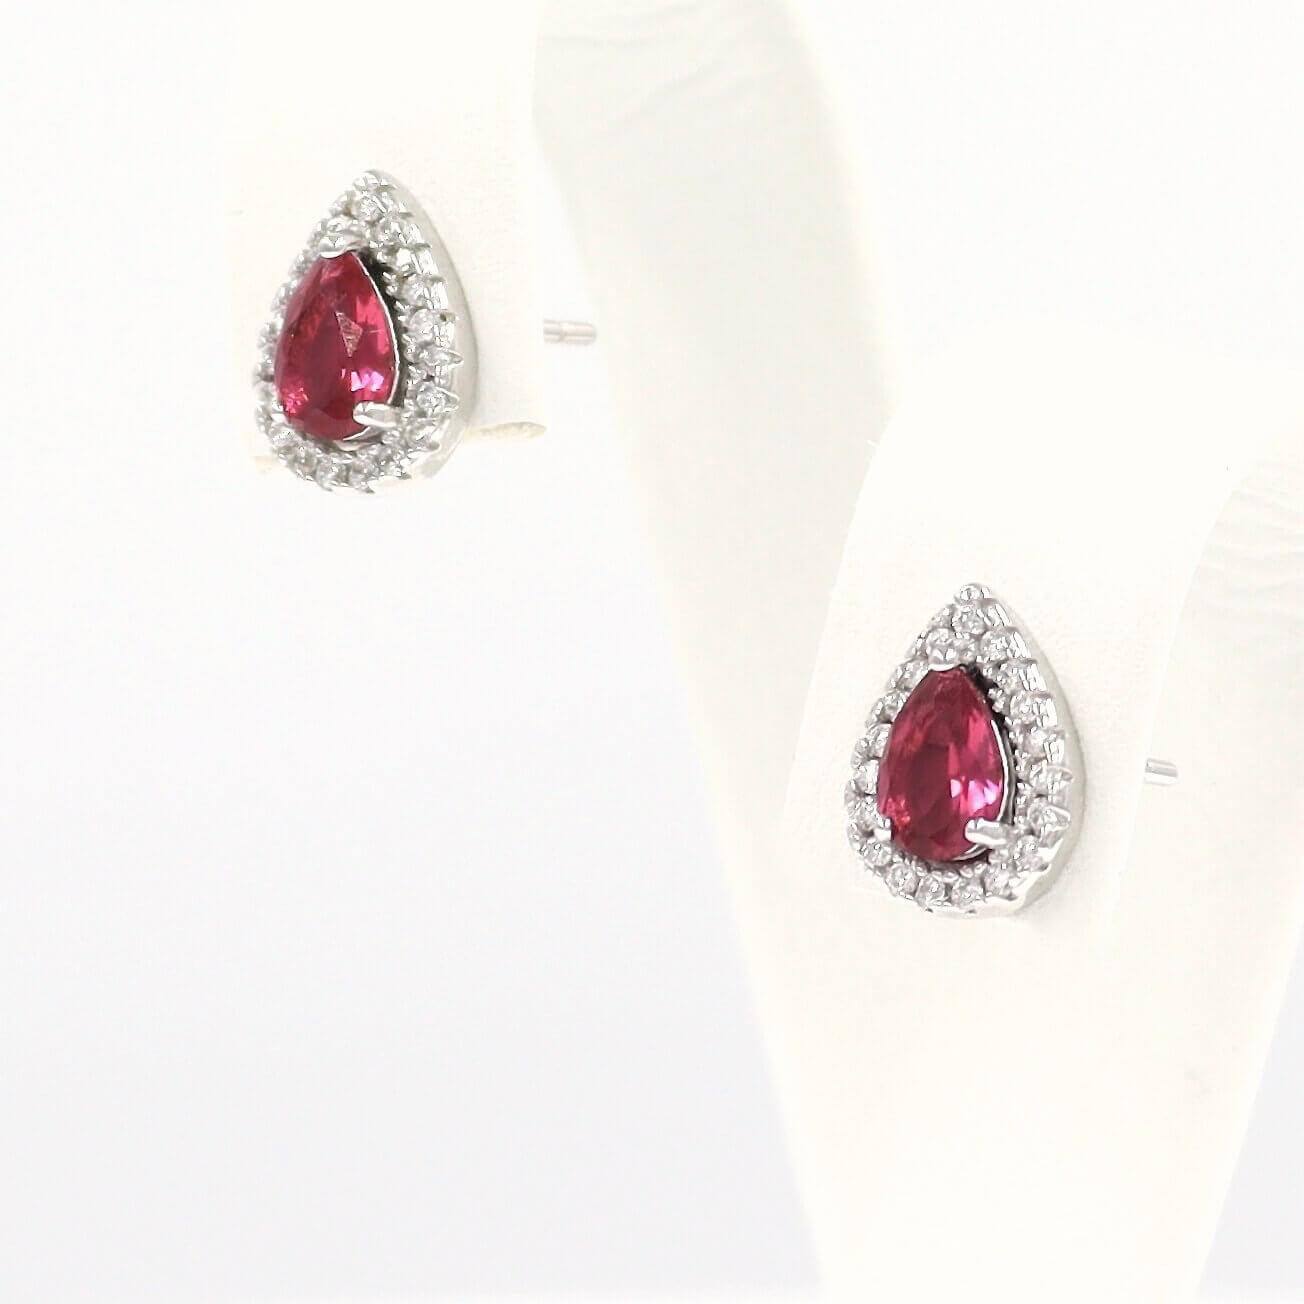 Σκουλαρίκια ασημένια ροζέτες, με κόκκινες πέτρες σε σχήμα σταγόνας